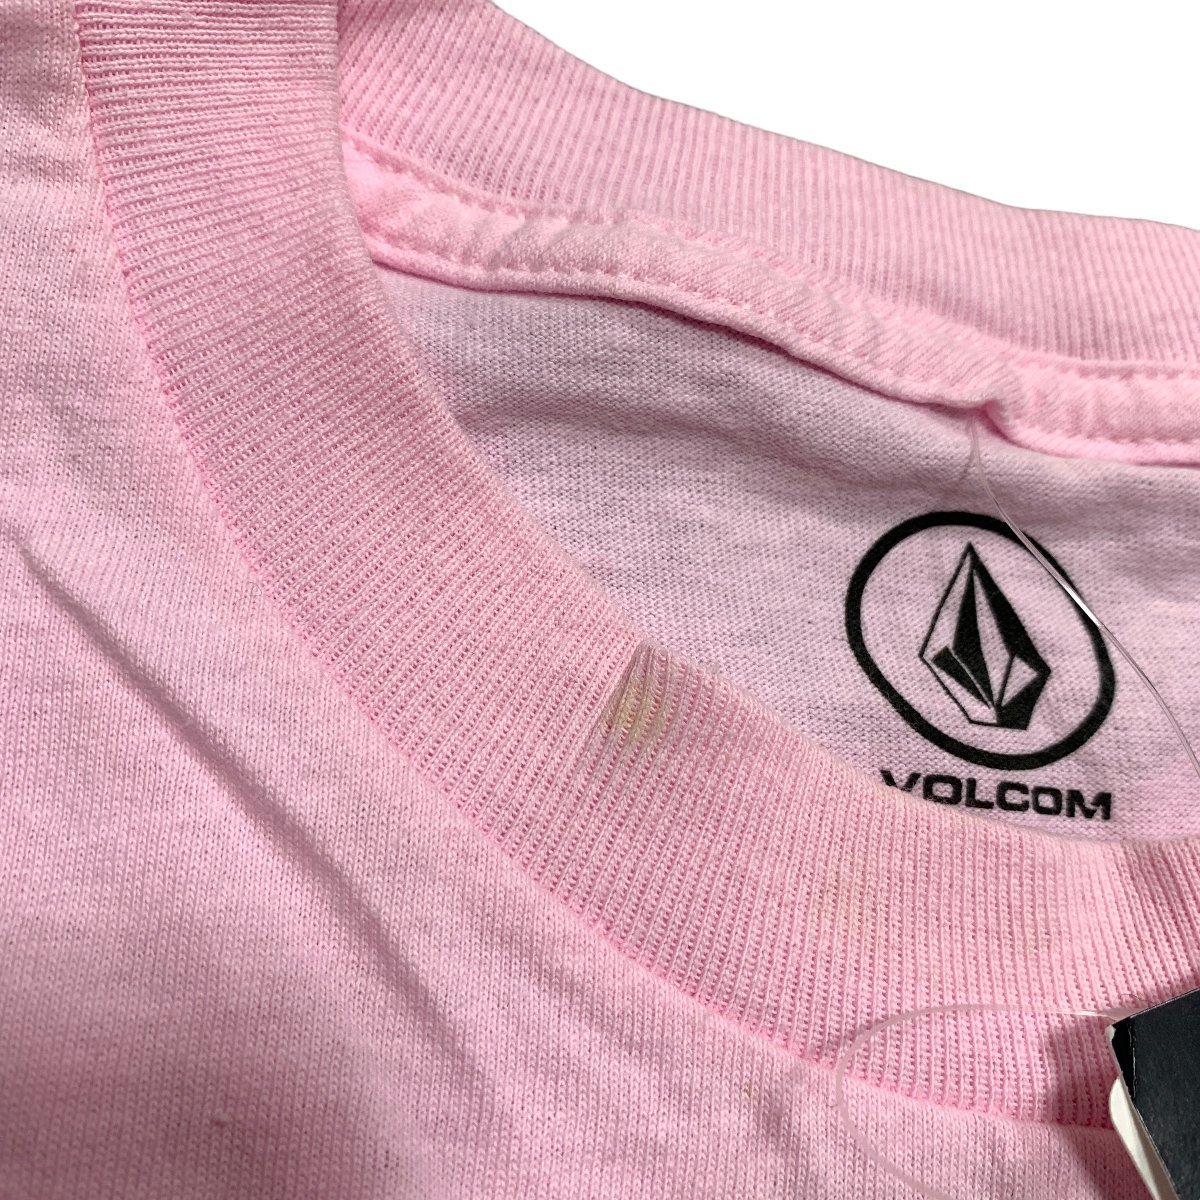 ◆未使用品◆ボルコム Tシャツ Sサイズ VOLCOM ピンク トップス ファッション アパレル V55698NA_画像3